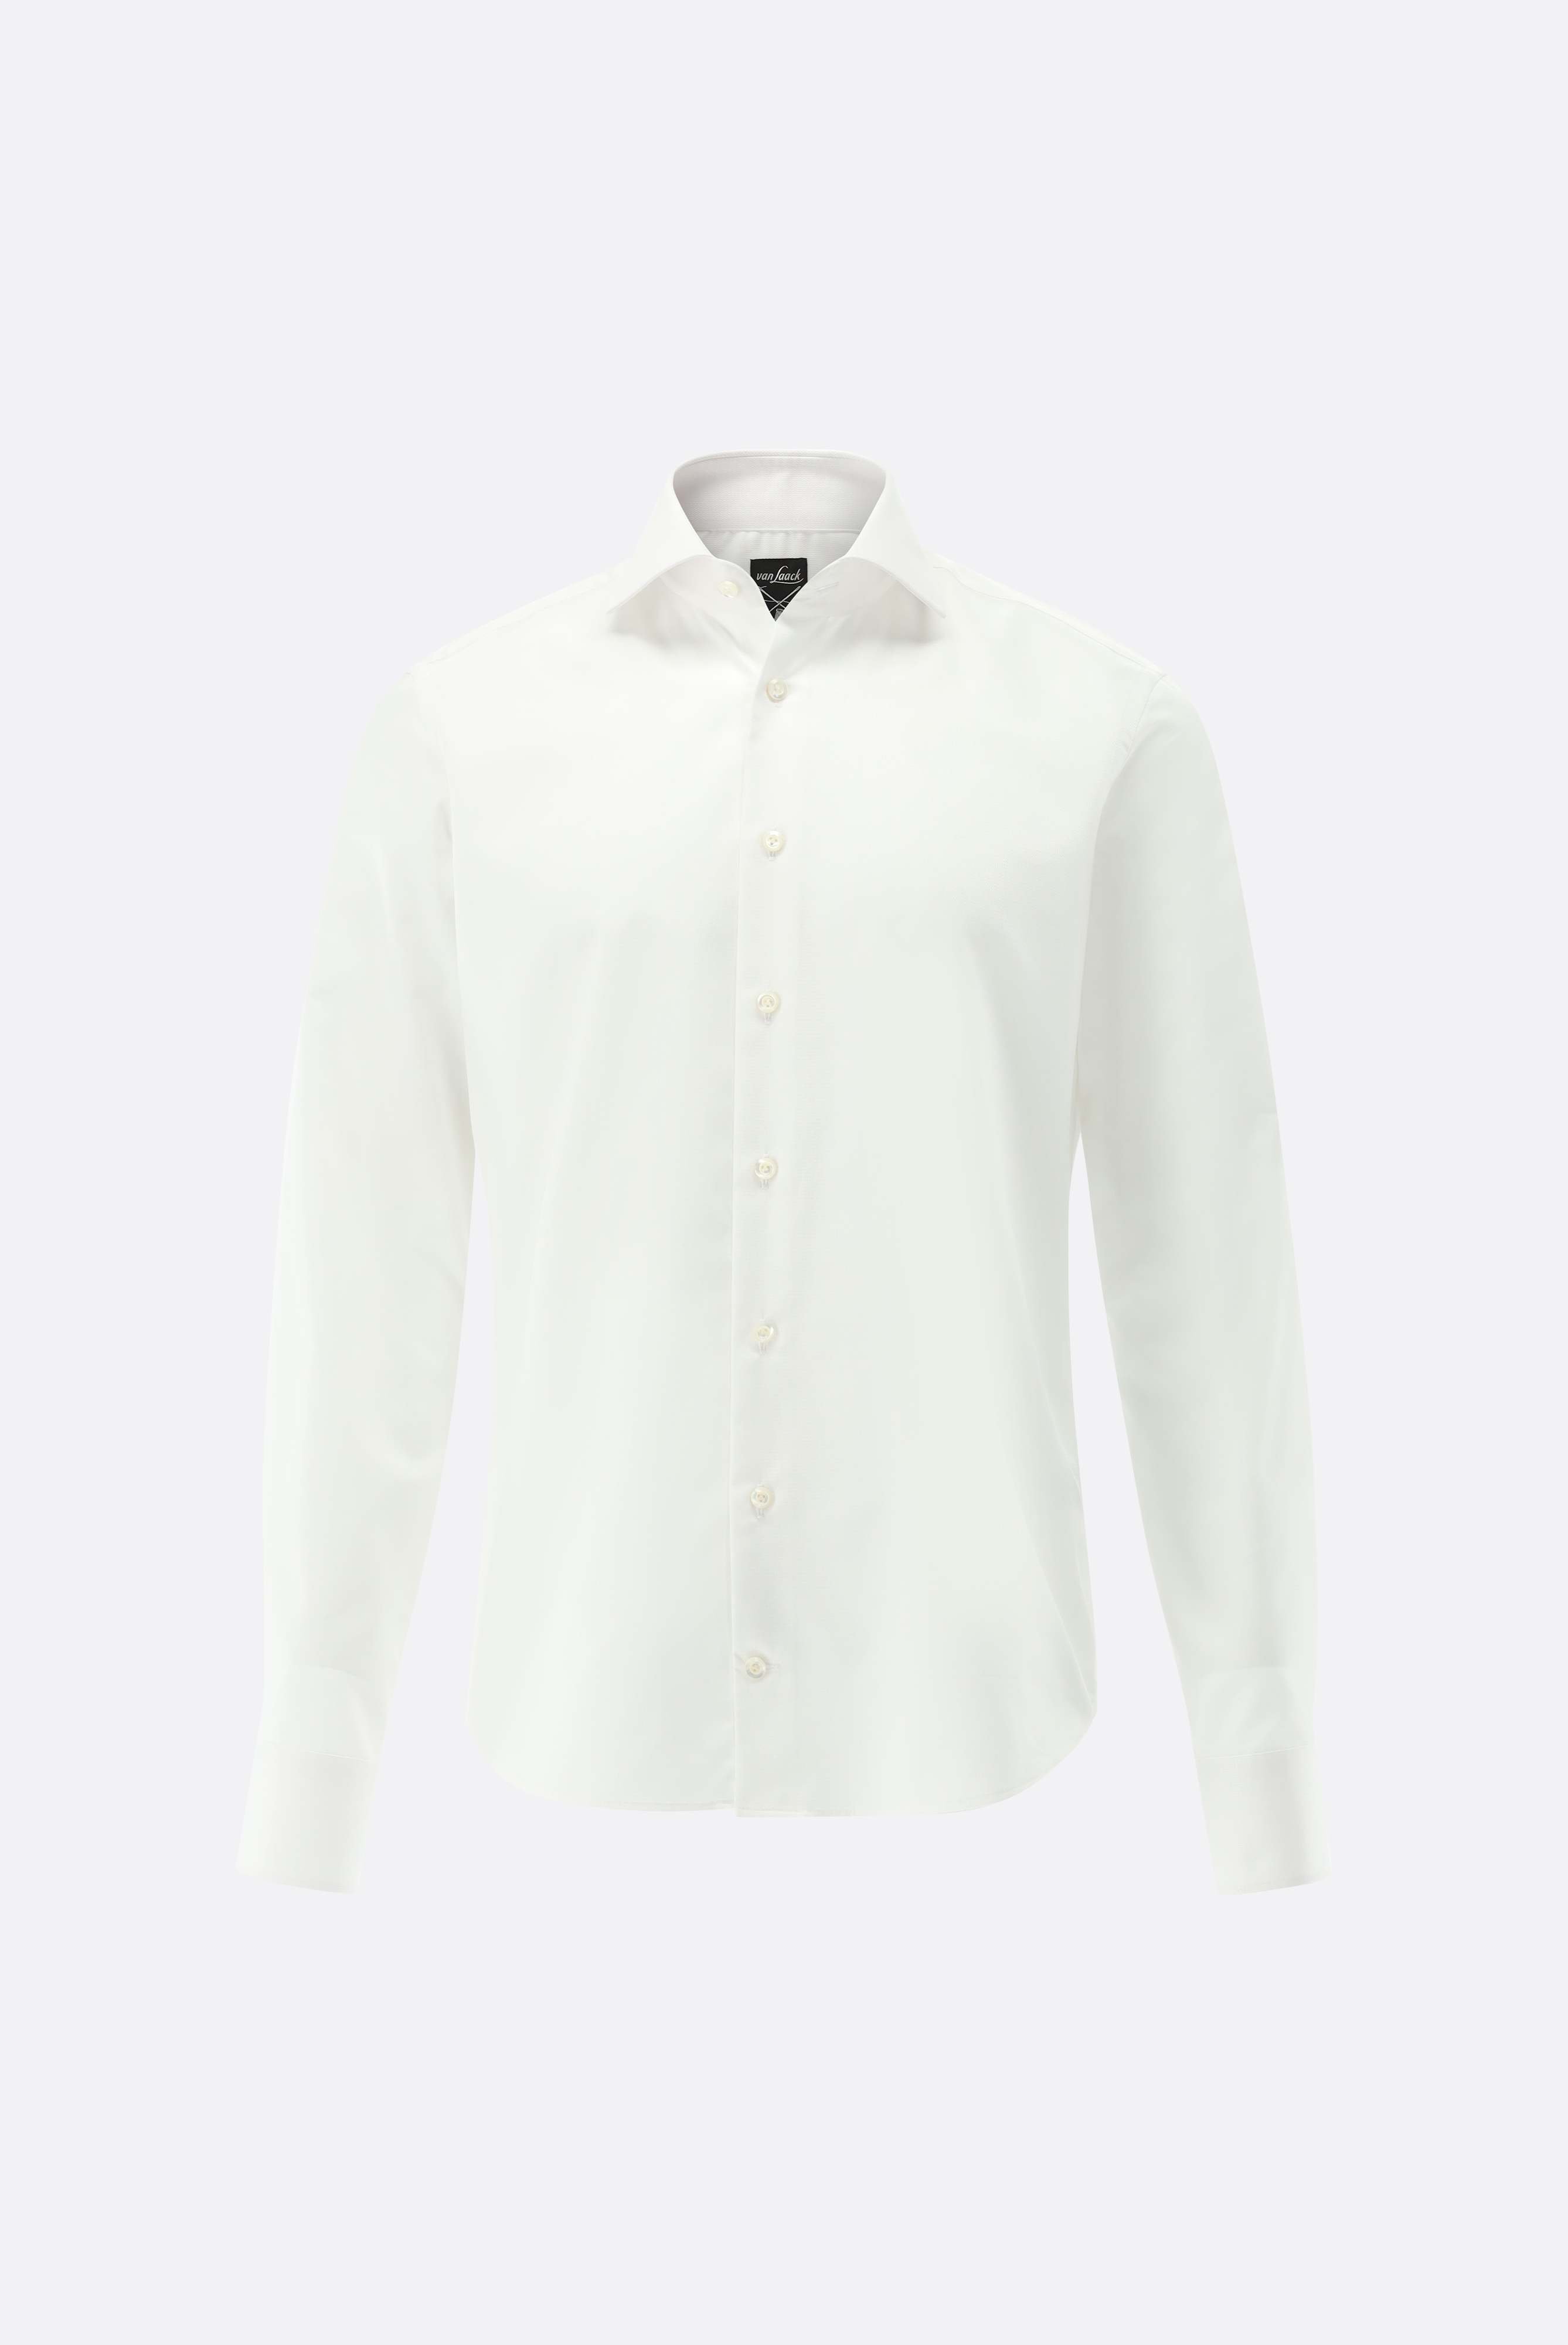 Bügelleichte Hemden+Bügelfreies Twil Hemd mit Struktur Slim Fit+20.2019.BQ.150301.000.46